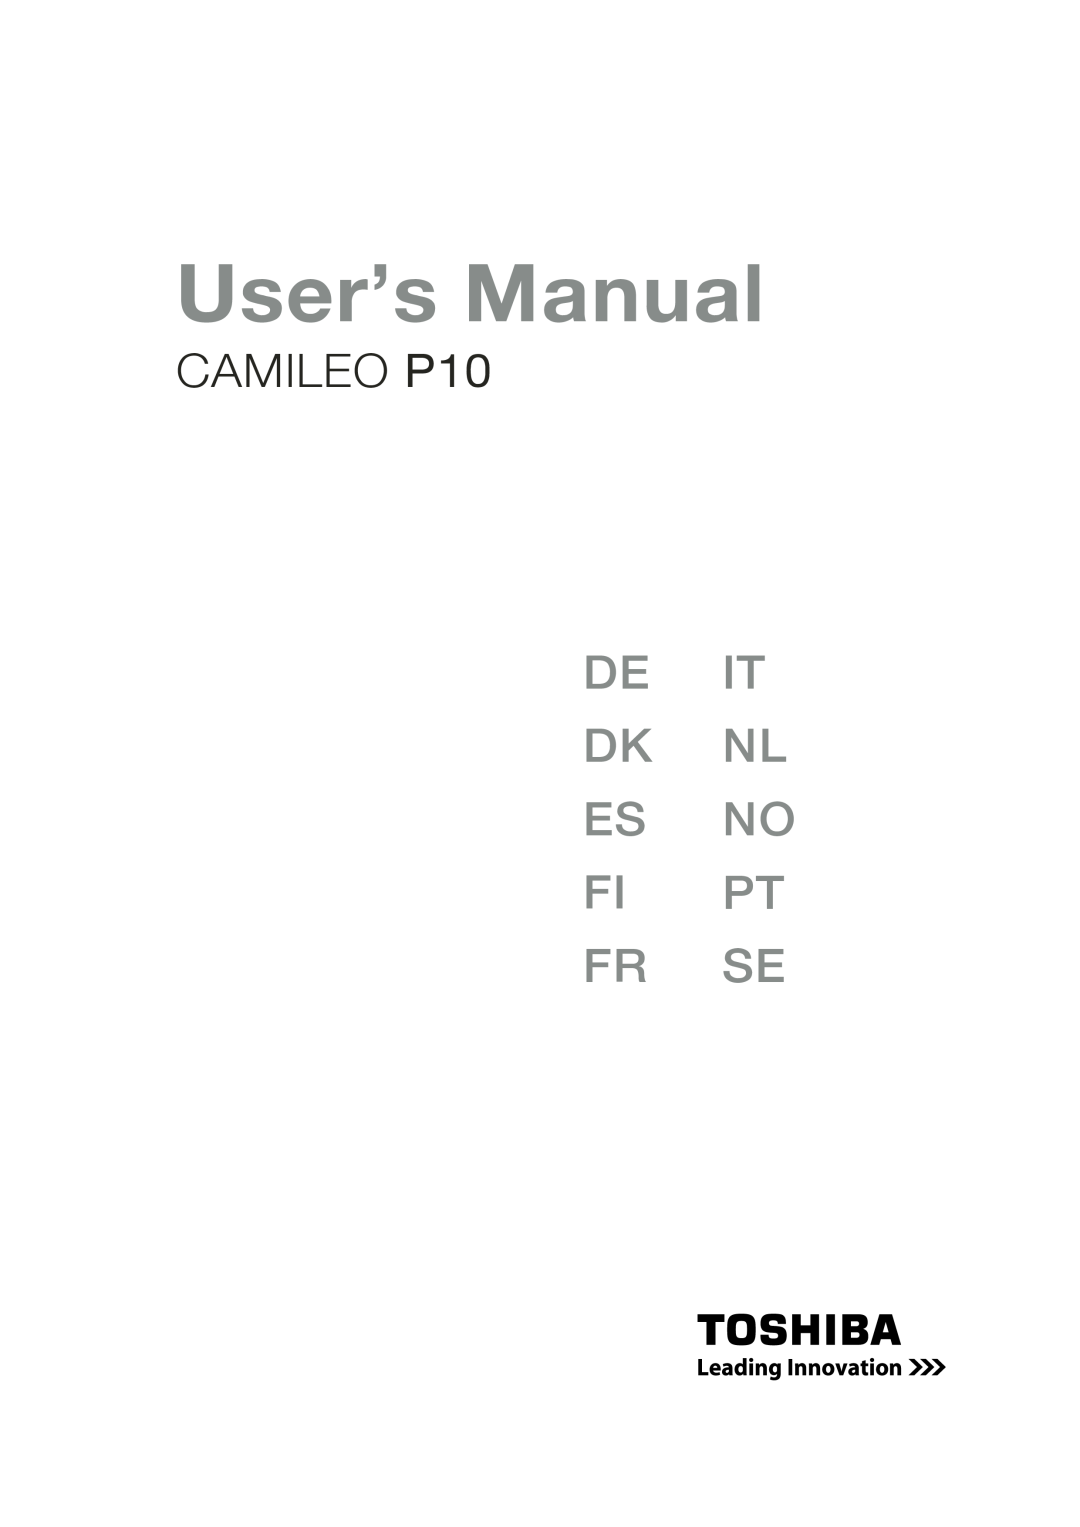 Toshiba user manual User’s Manual, CAMILEO P10, De It Dk Nl Es No Fi Pt Fr Se 